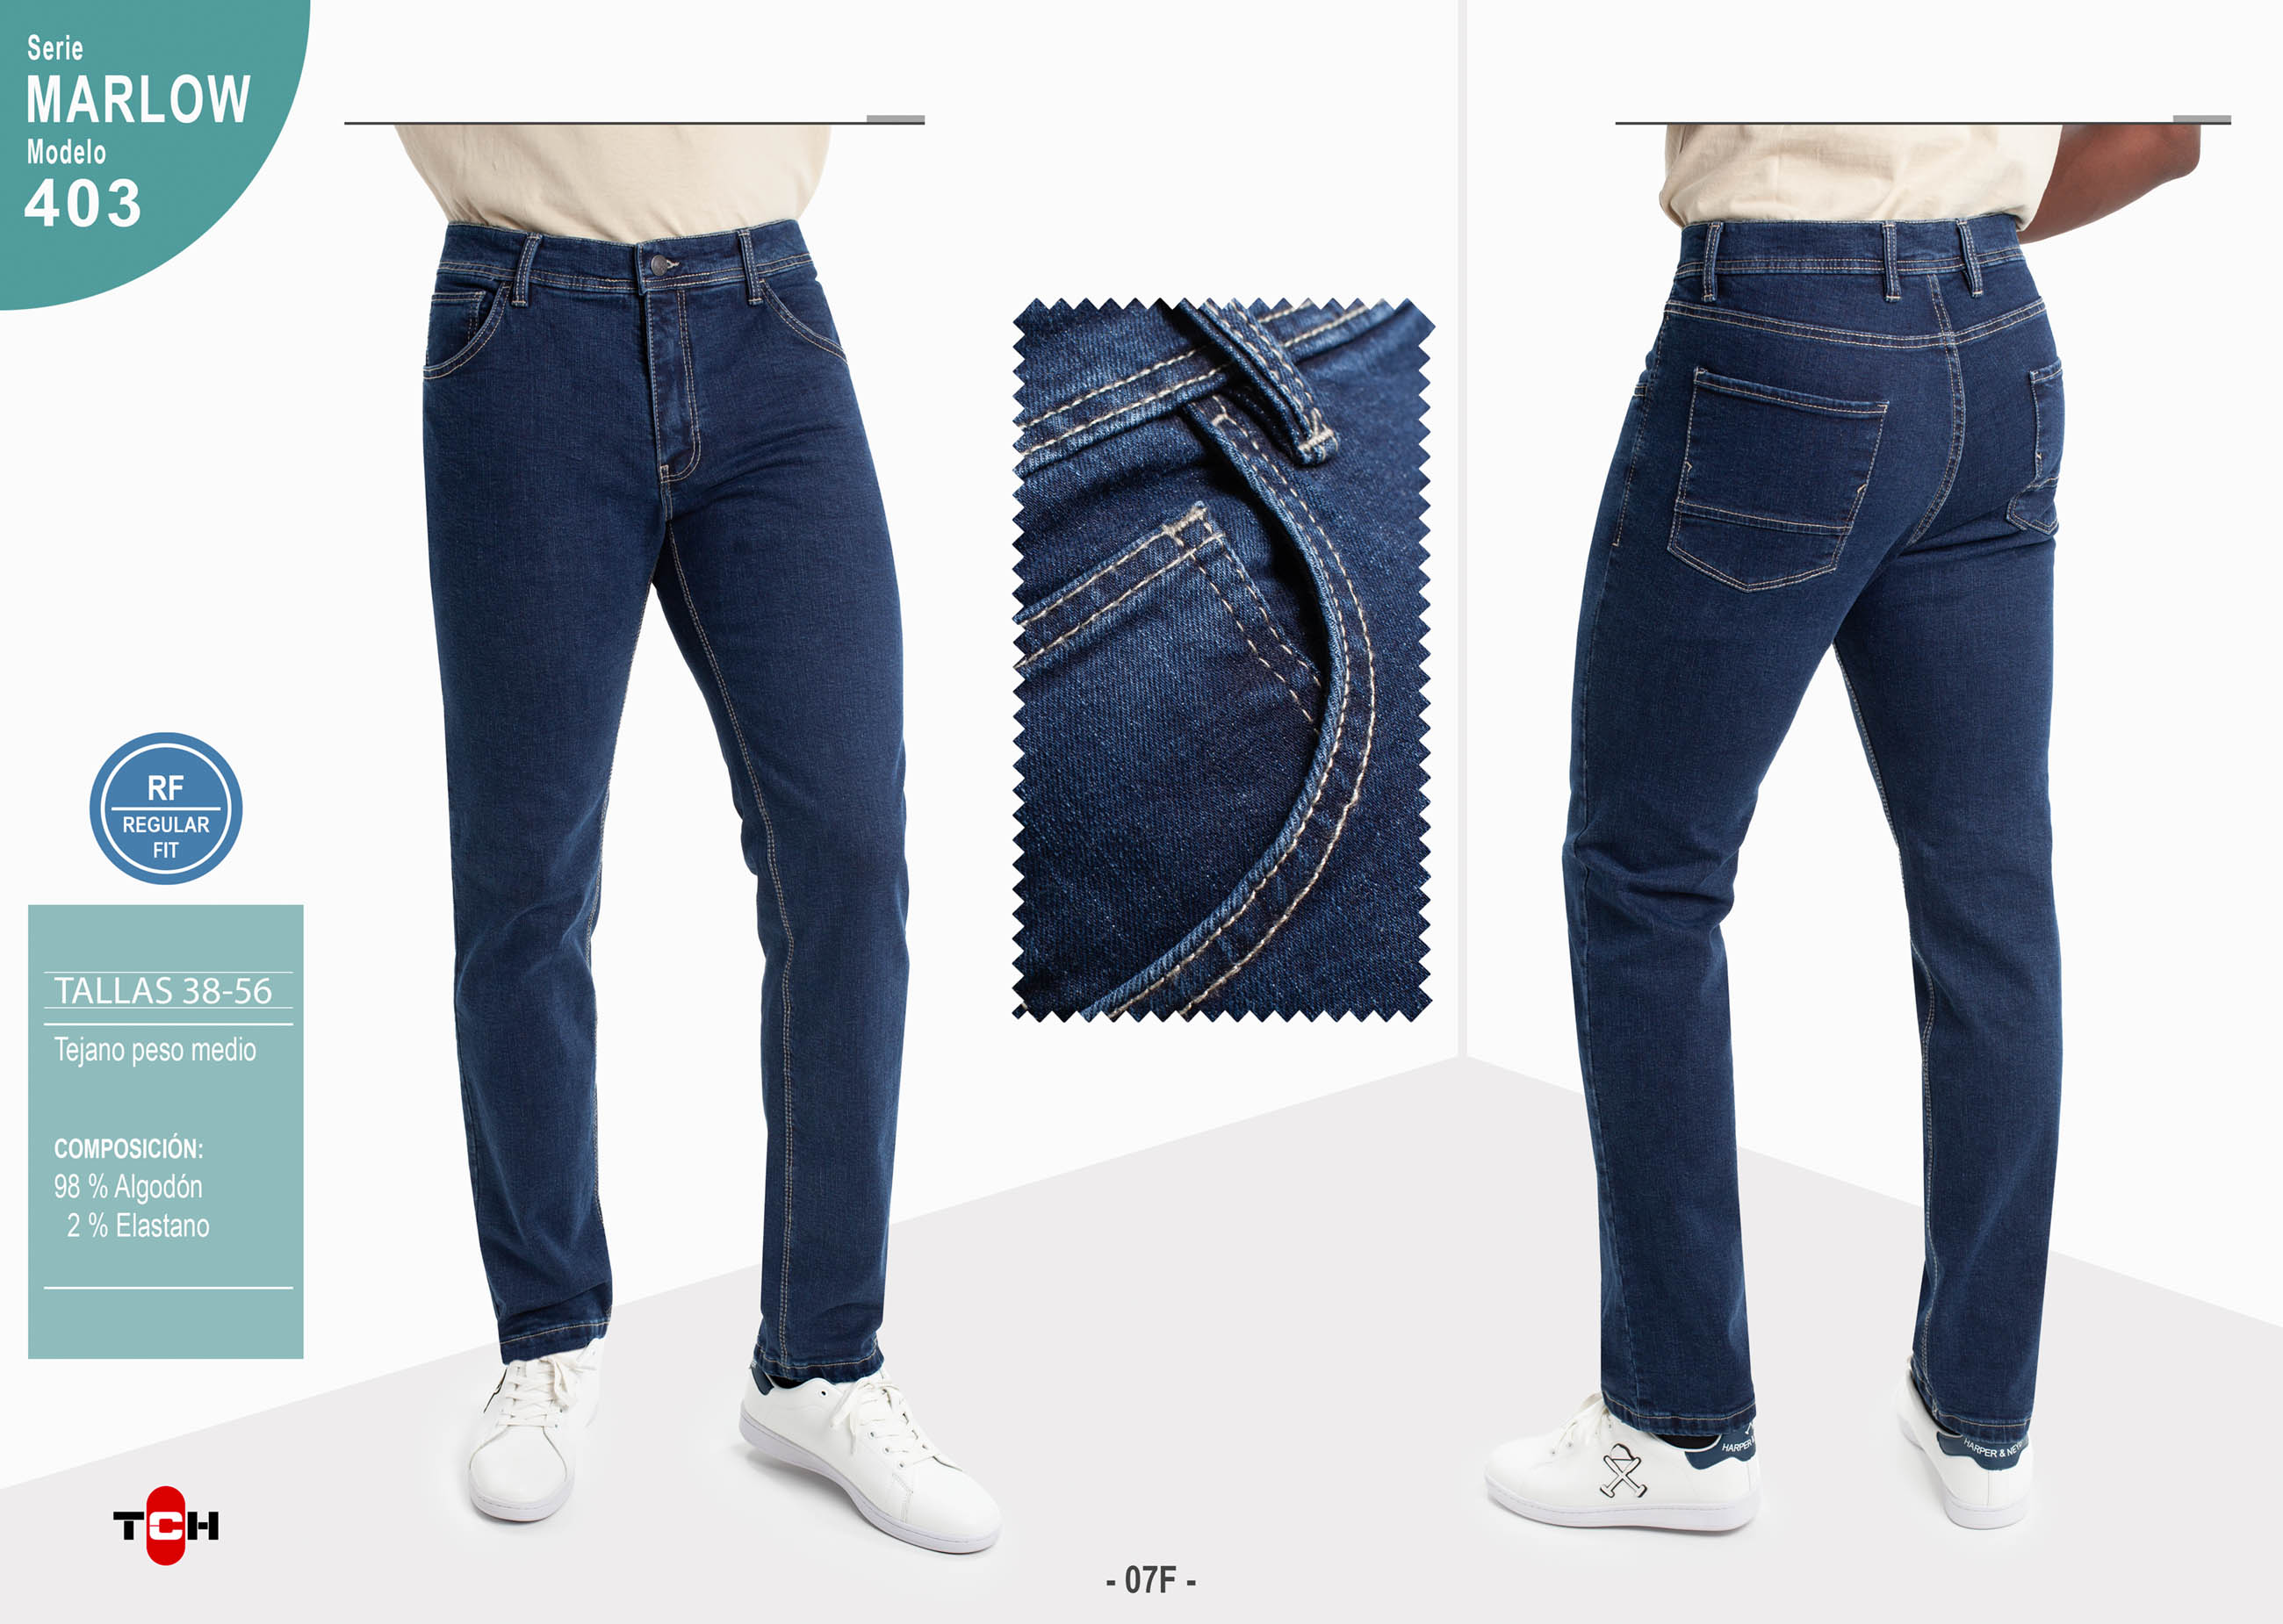 Jeans para hombre, pantalón vaquero en tejido denim azul piedra de algodón y poliester bolsillo trasero con corte con lycra e hilo a contraste en línea Regular Fit.